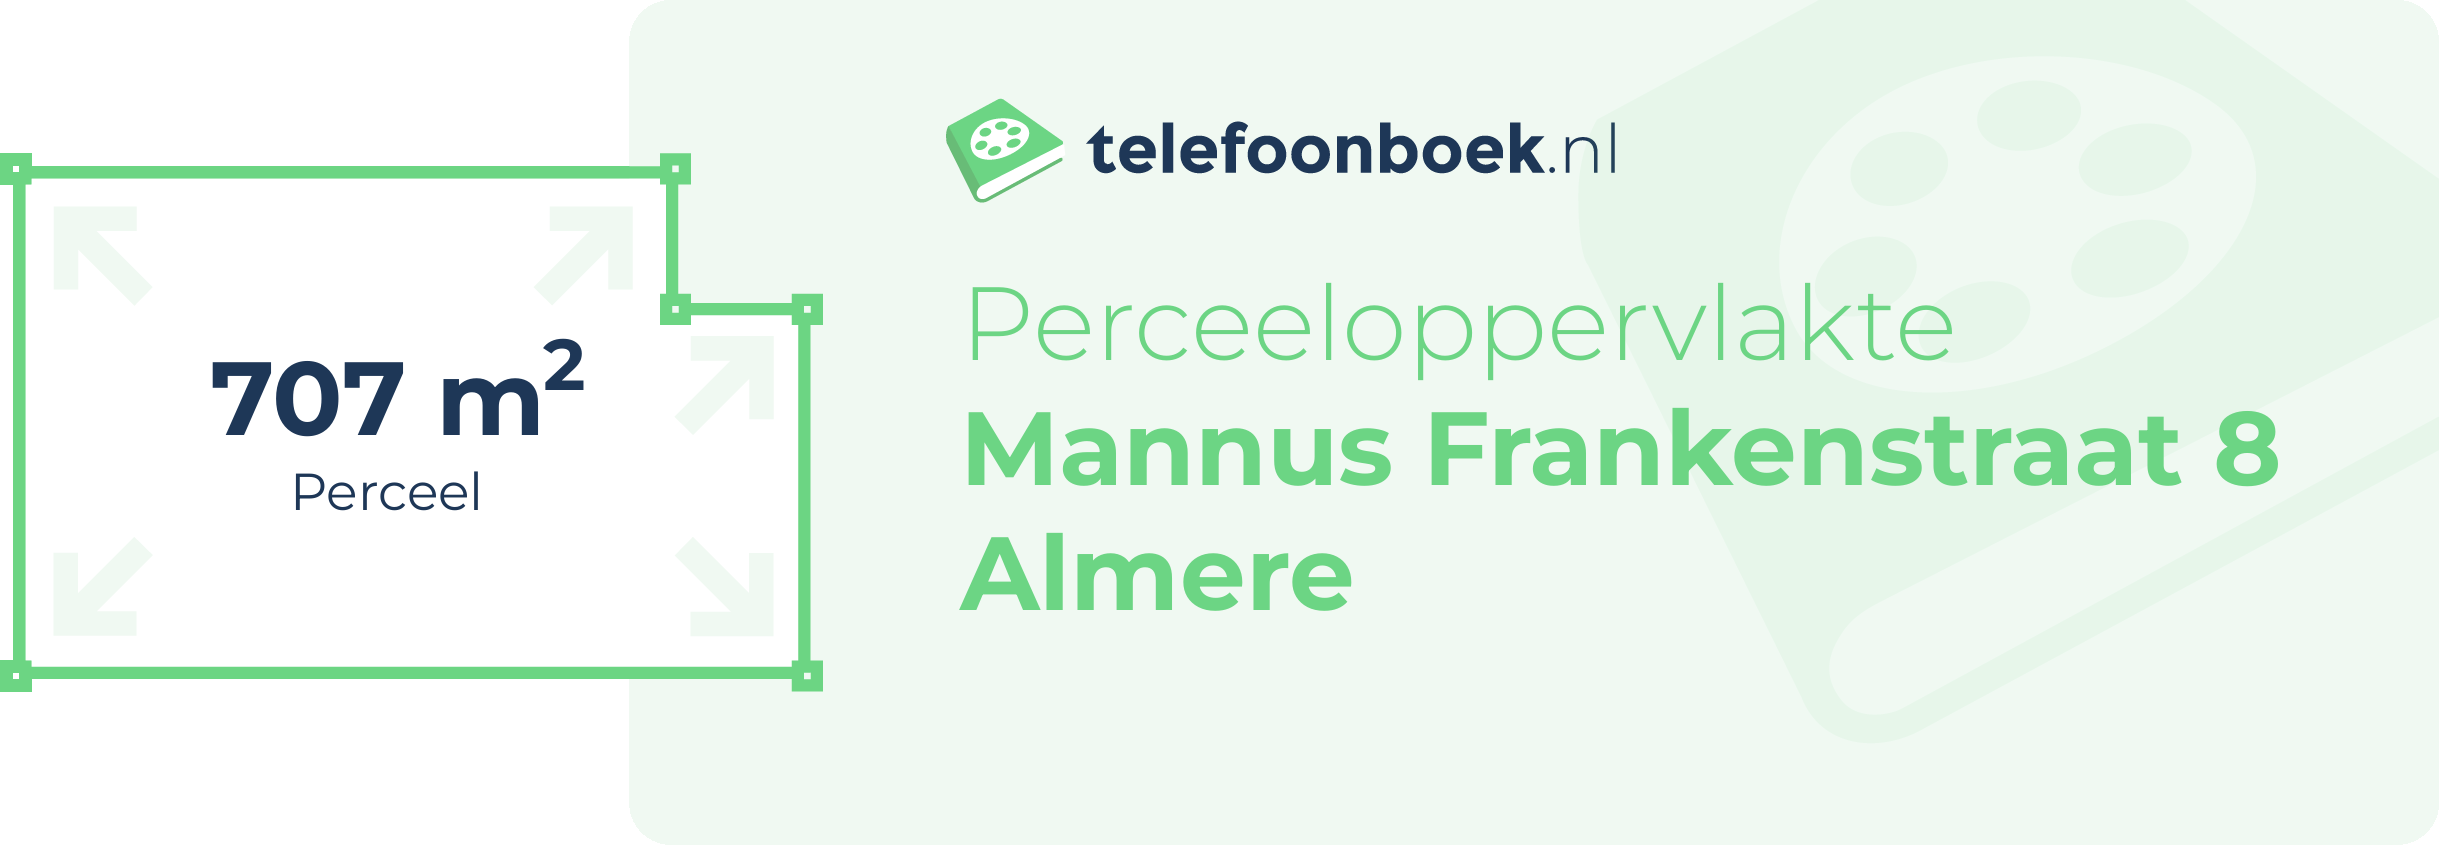 Perceeloppervlakte Mannus Frankenstraat 8 Almere